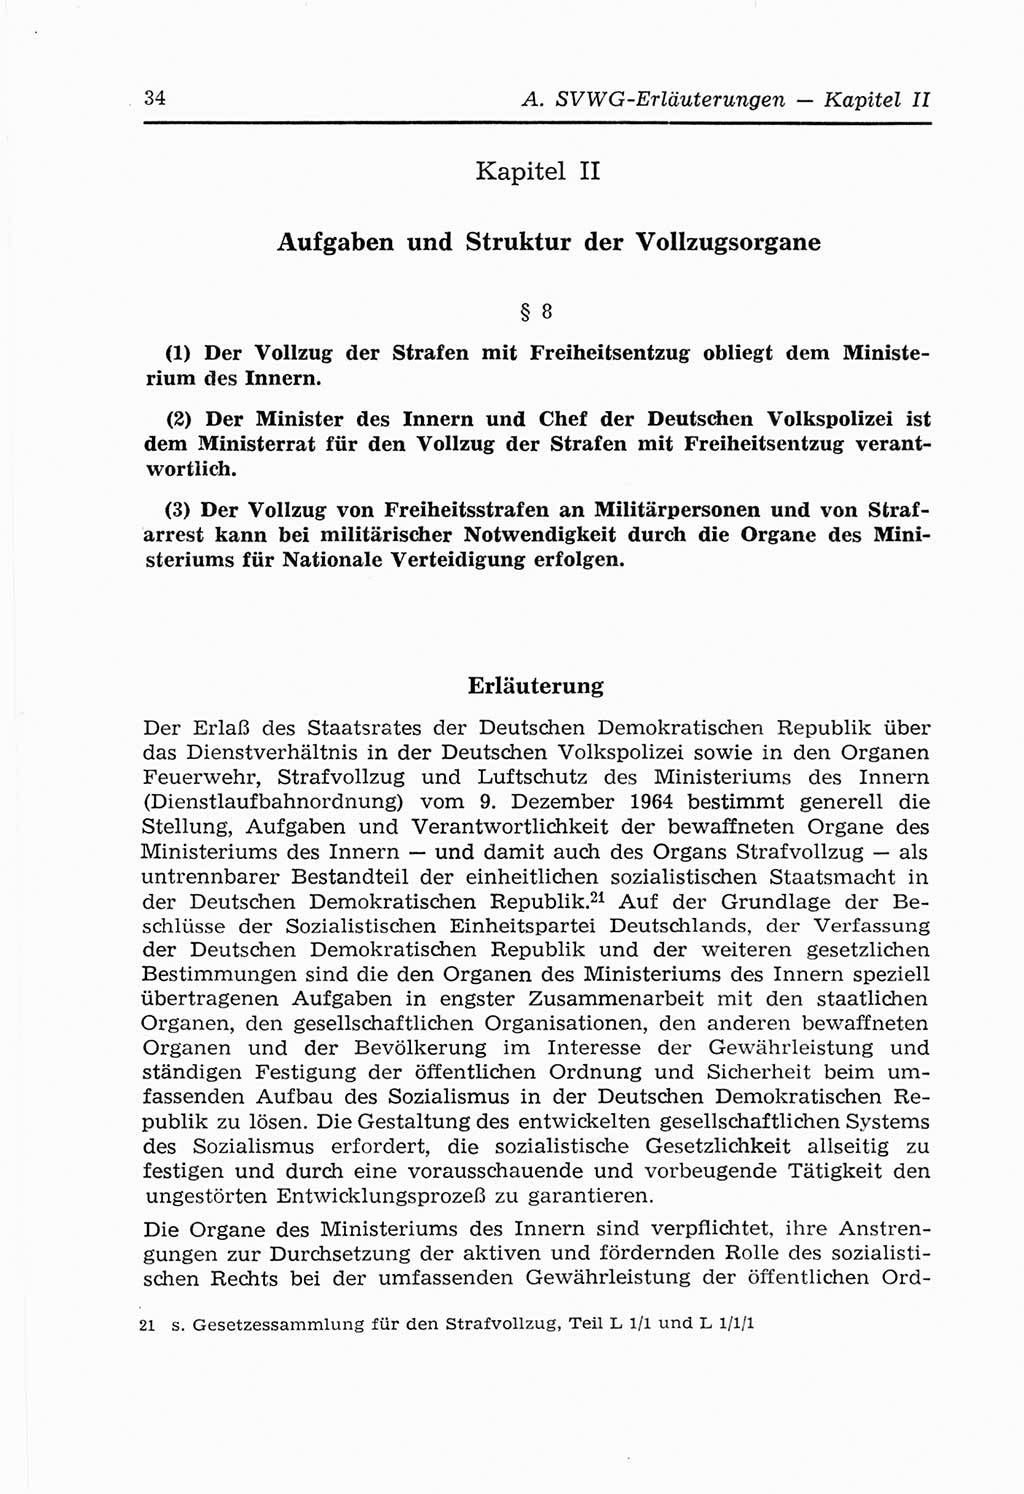 Strafvollzugs- und Wiedereingliederungsgesetz (SVWG) der Deutschen Demokratischen Republik (DDR) 1968, Seite 34 (SVWG DDR 1968, S. 34)